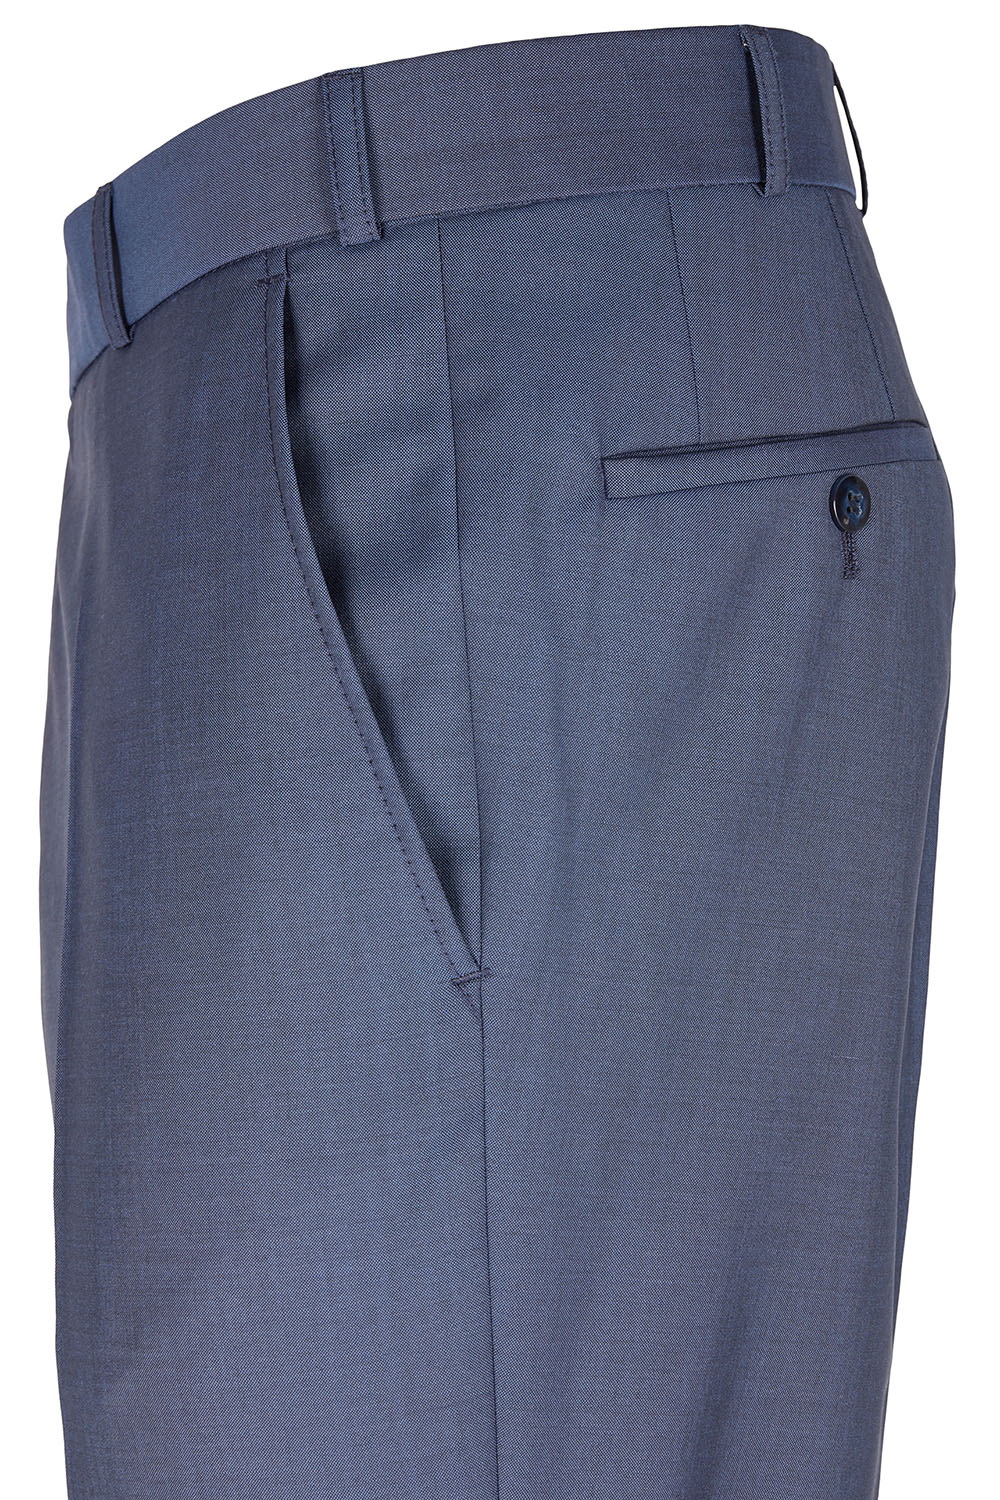 WILVORST kék szmoking nadrág részletek 471201-33 Modell 724